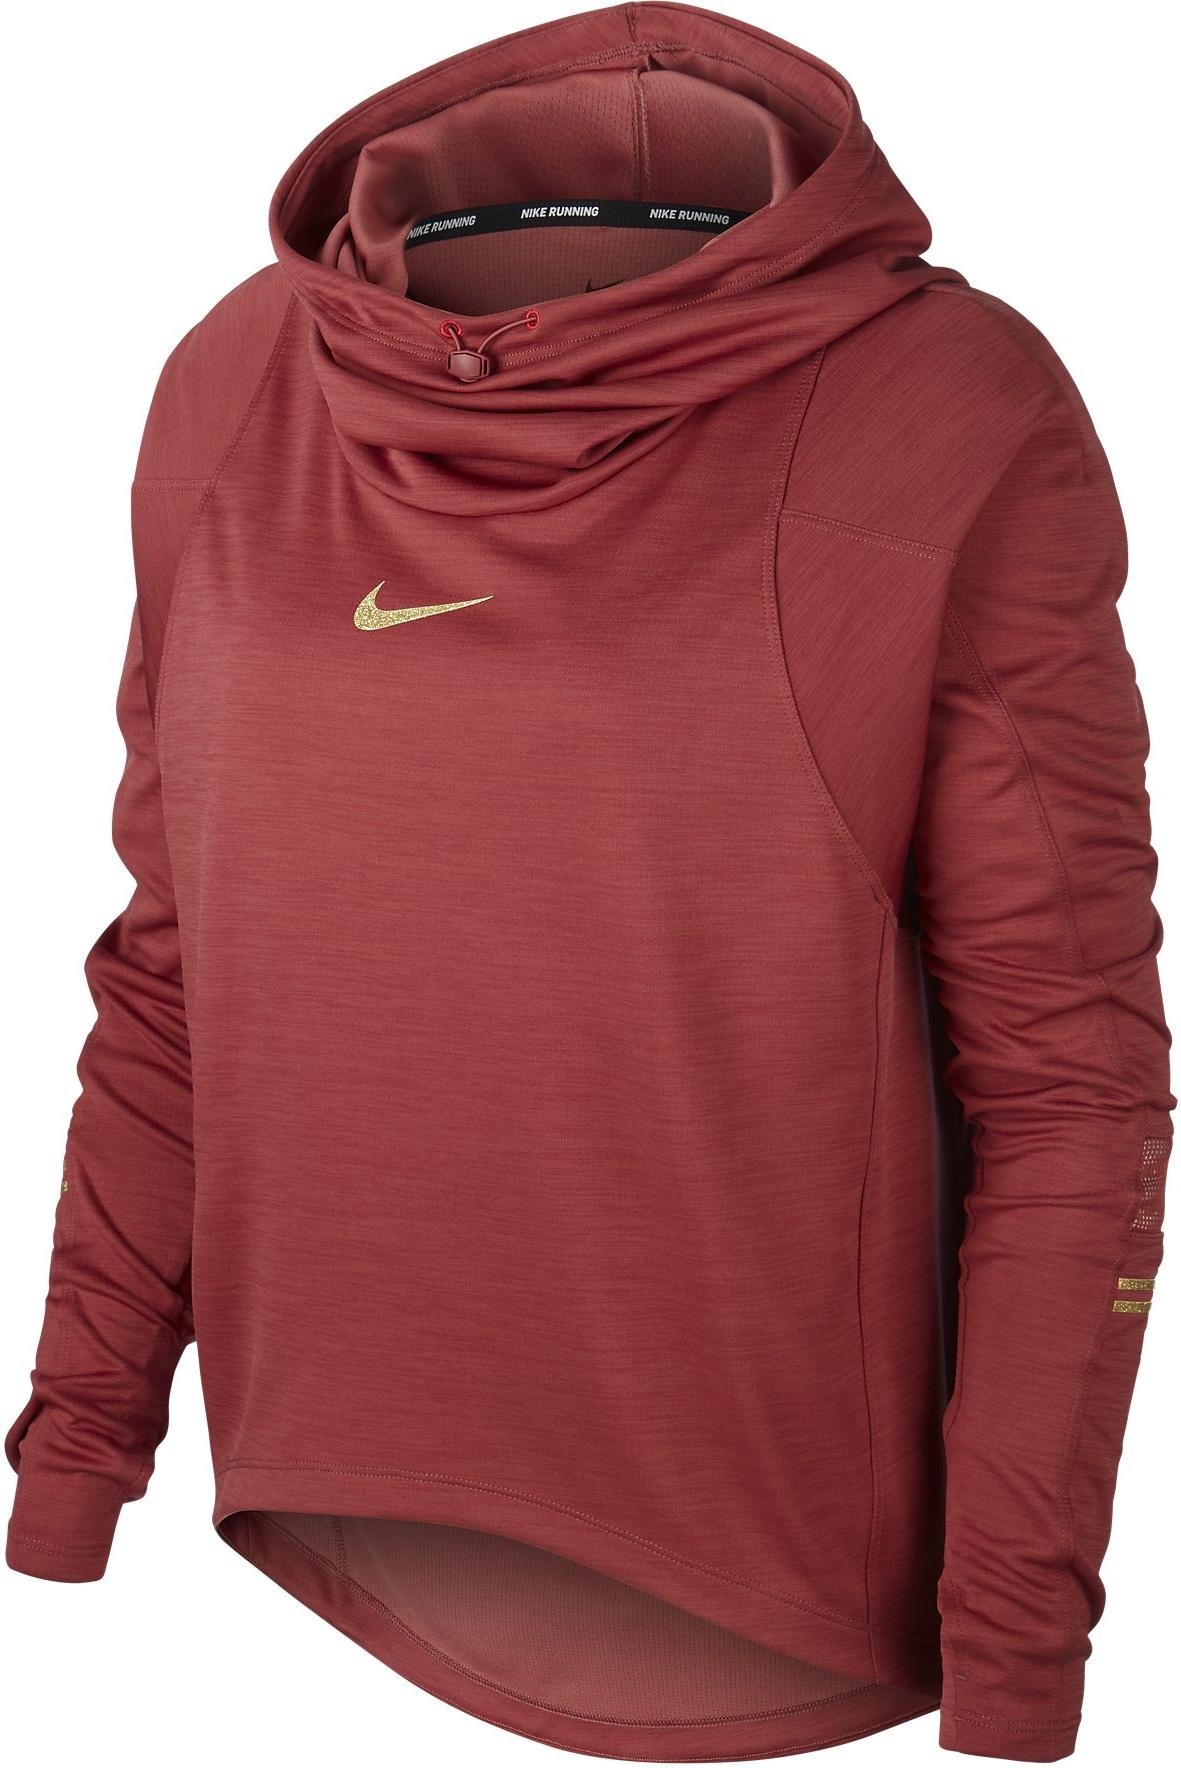 Dámské běžecké tričko s dlouhým rukávem Nike Glam